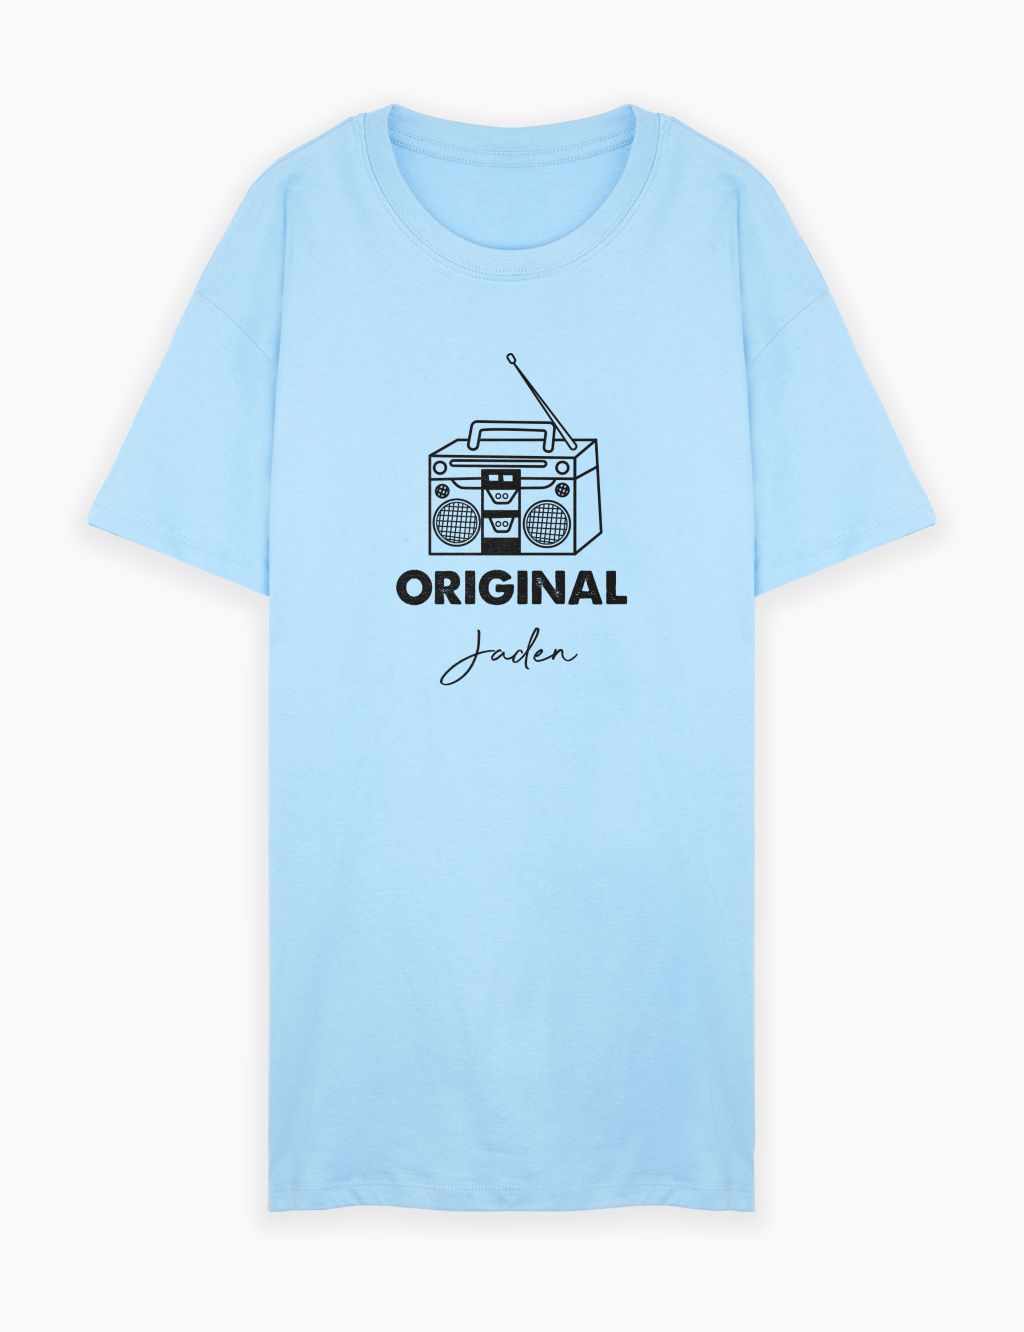 Personalised Original T-Shirt for Men